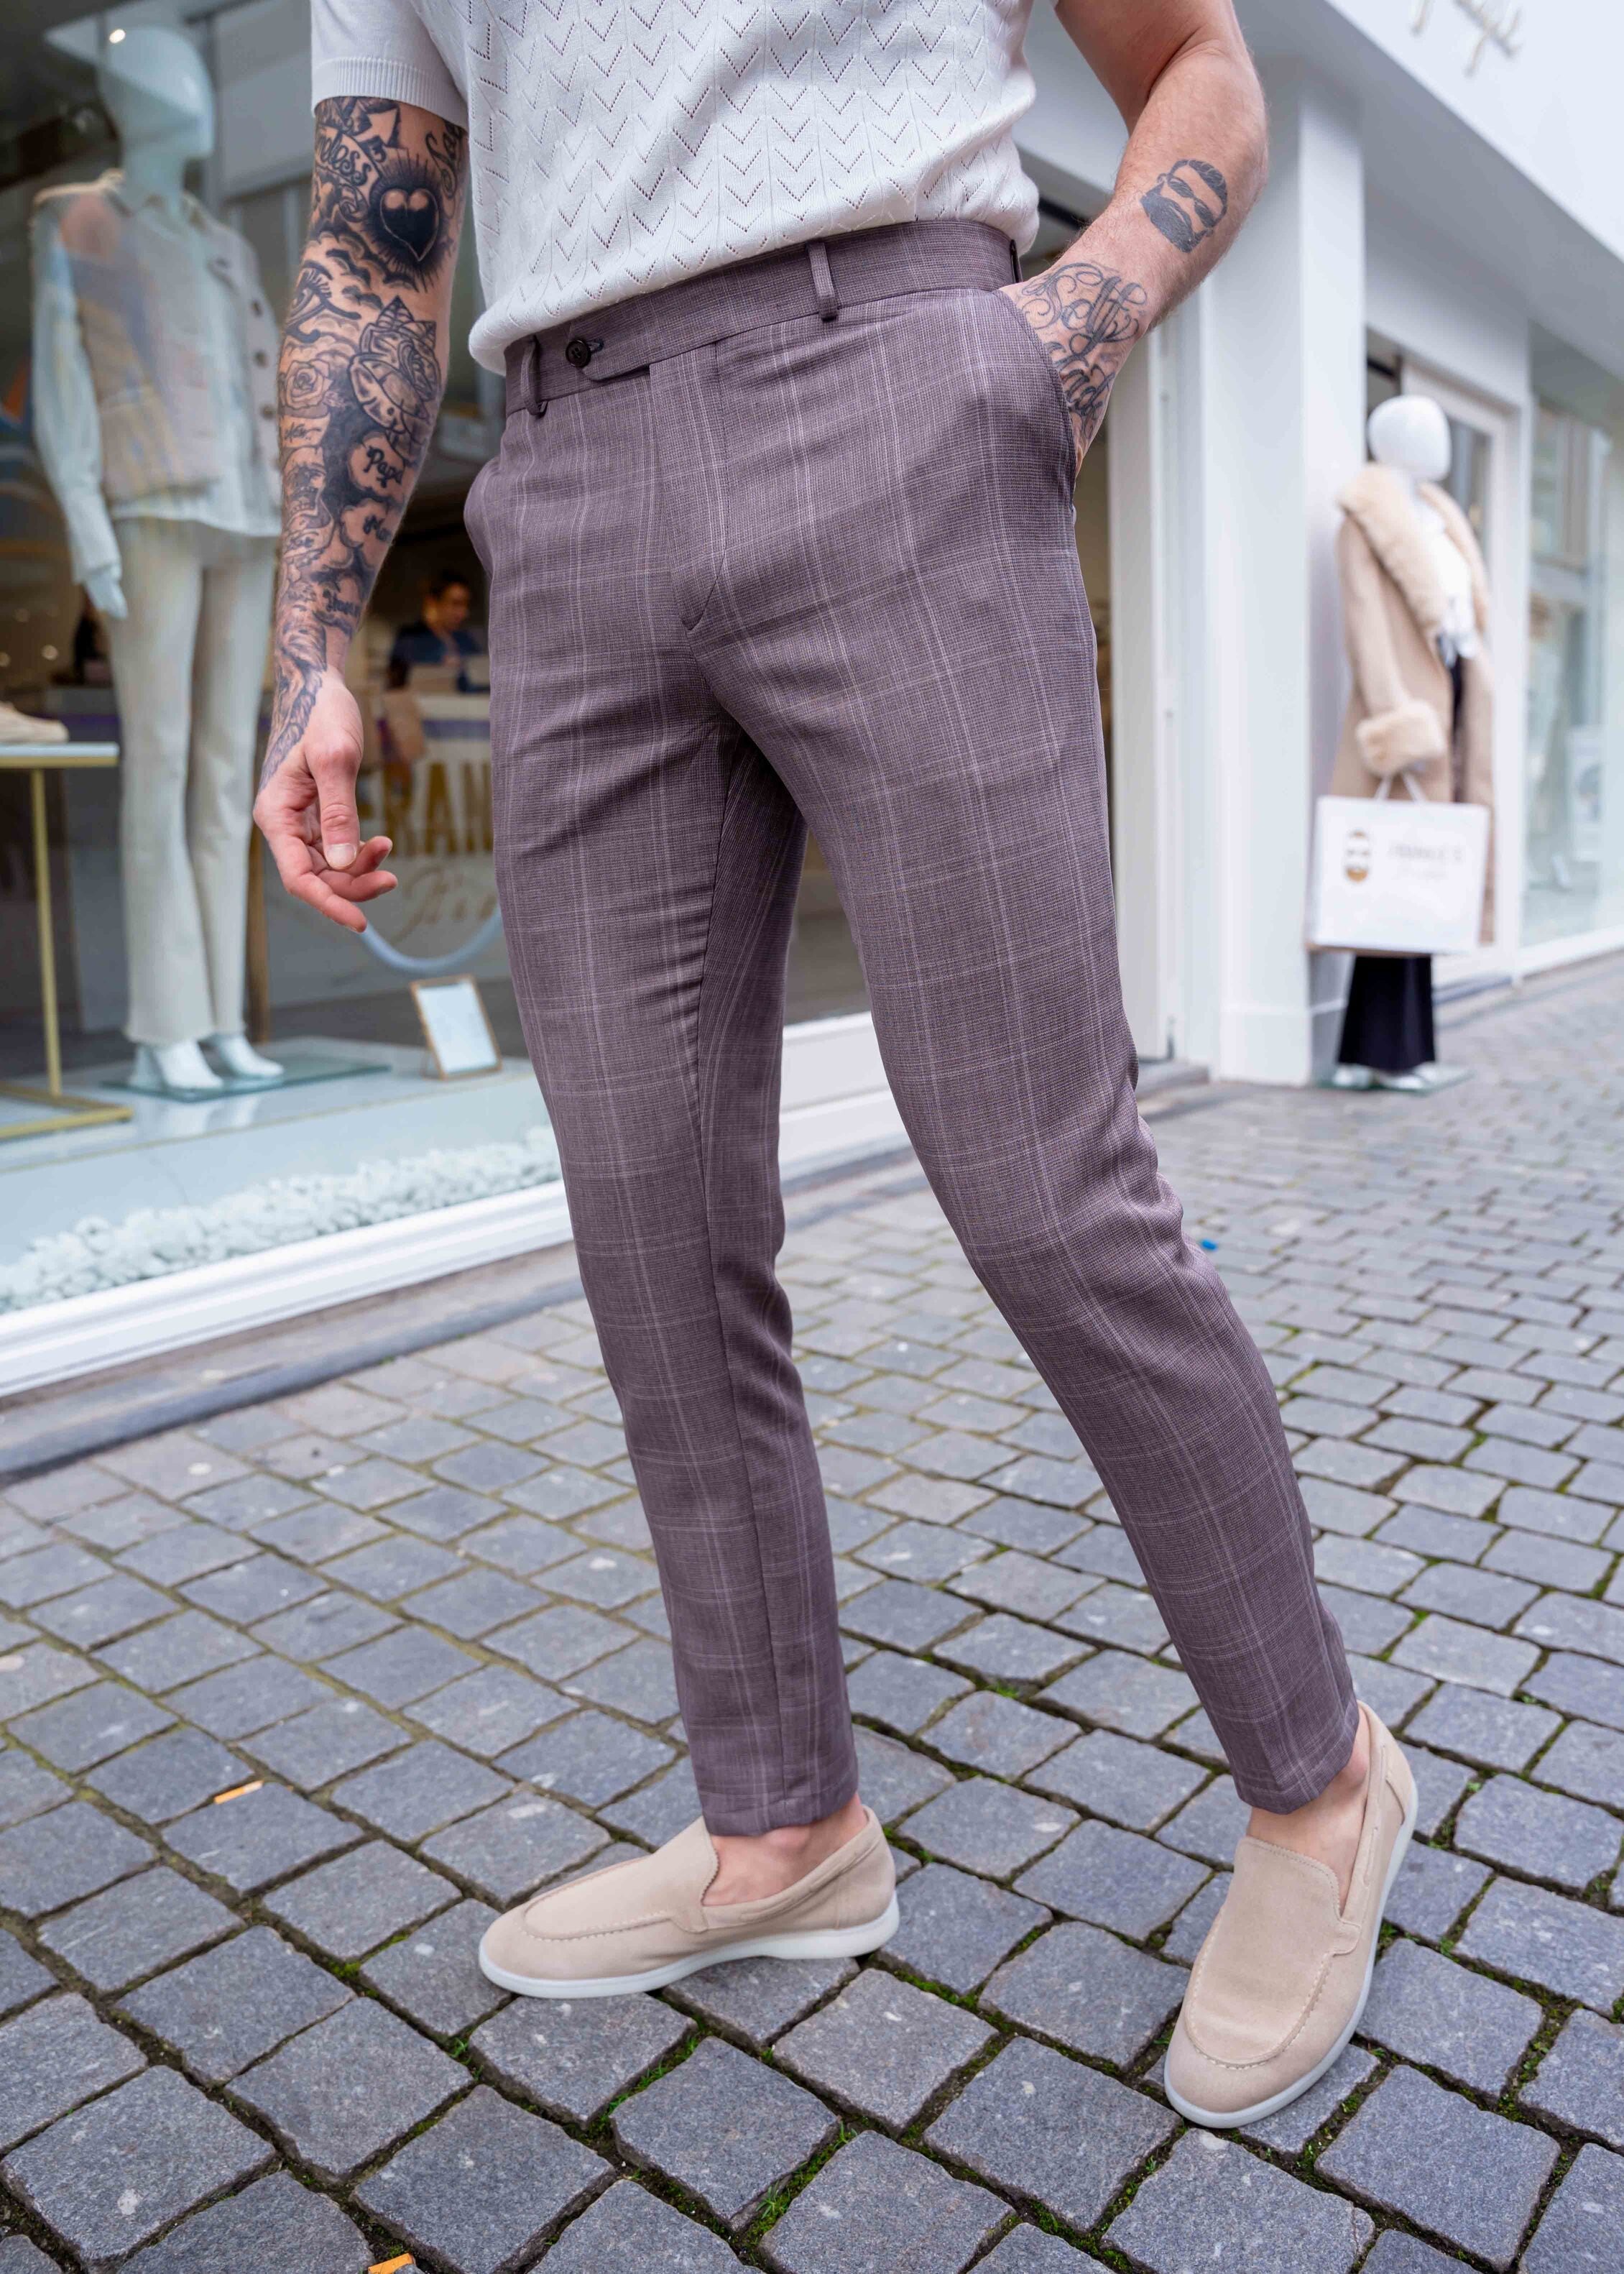 Pantalon Oxford brown